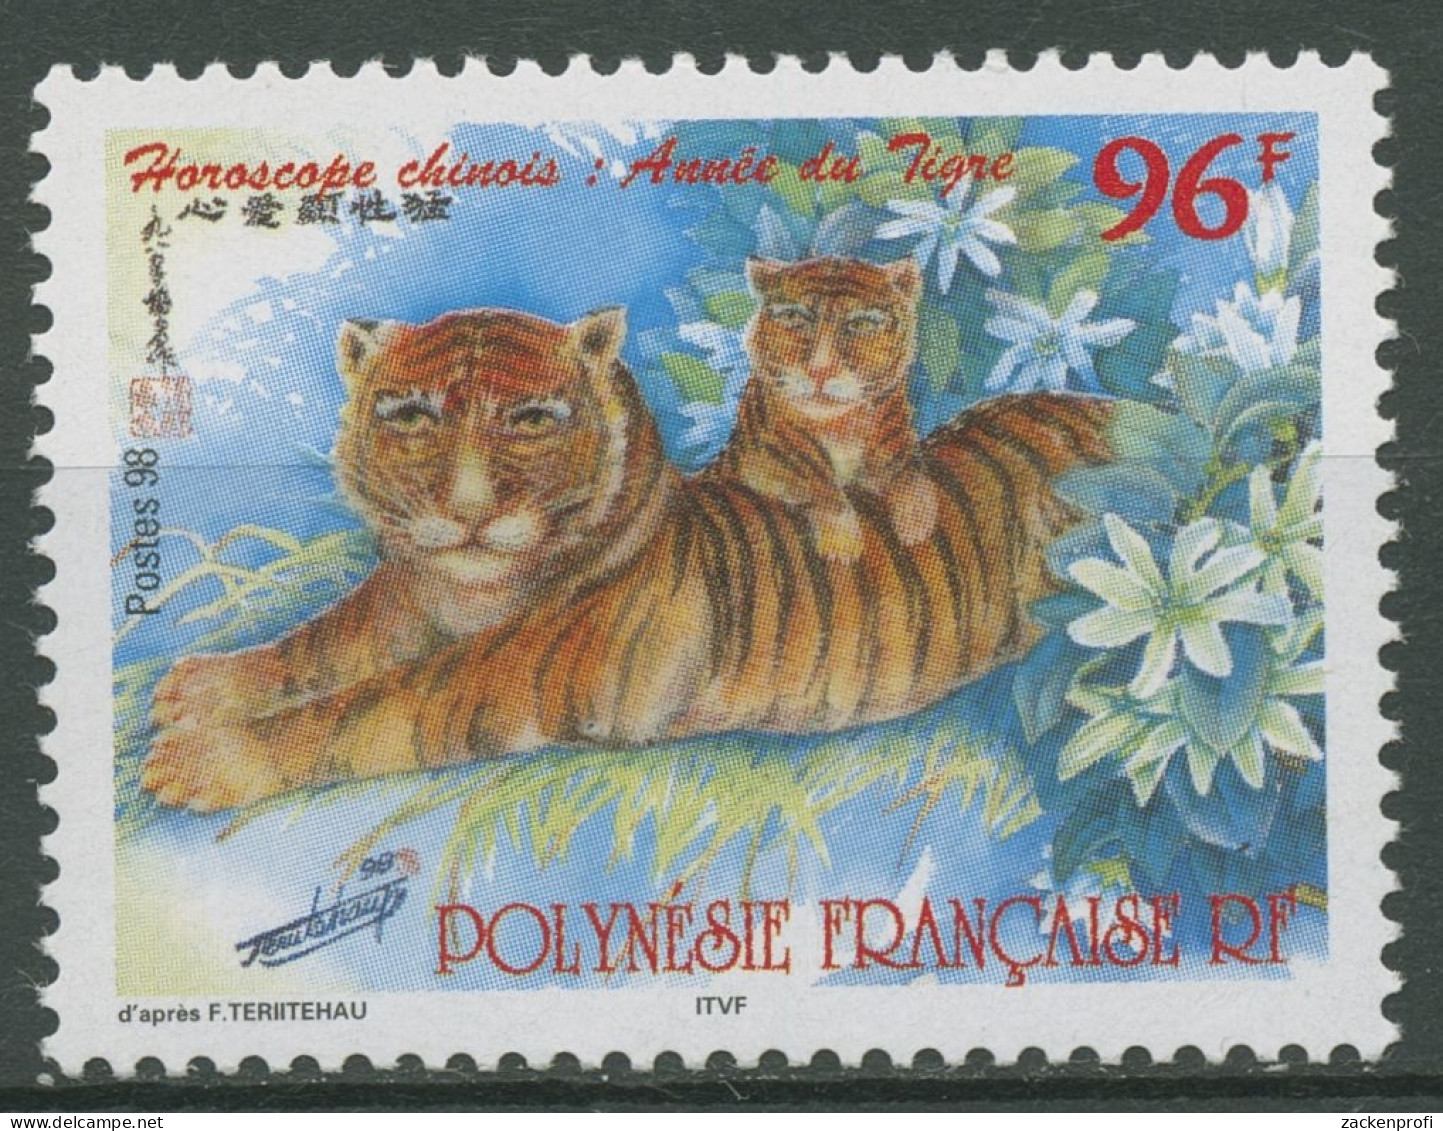 Französisch-Polynesien 1998 Chin. Neujahr Jahr Des Tigers 755 Postfrisch - Nuevos